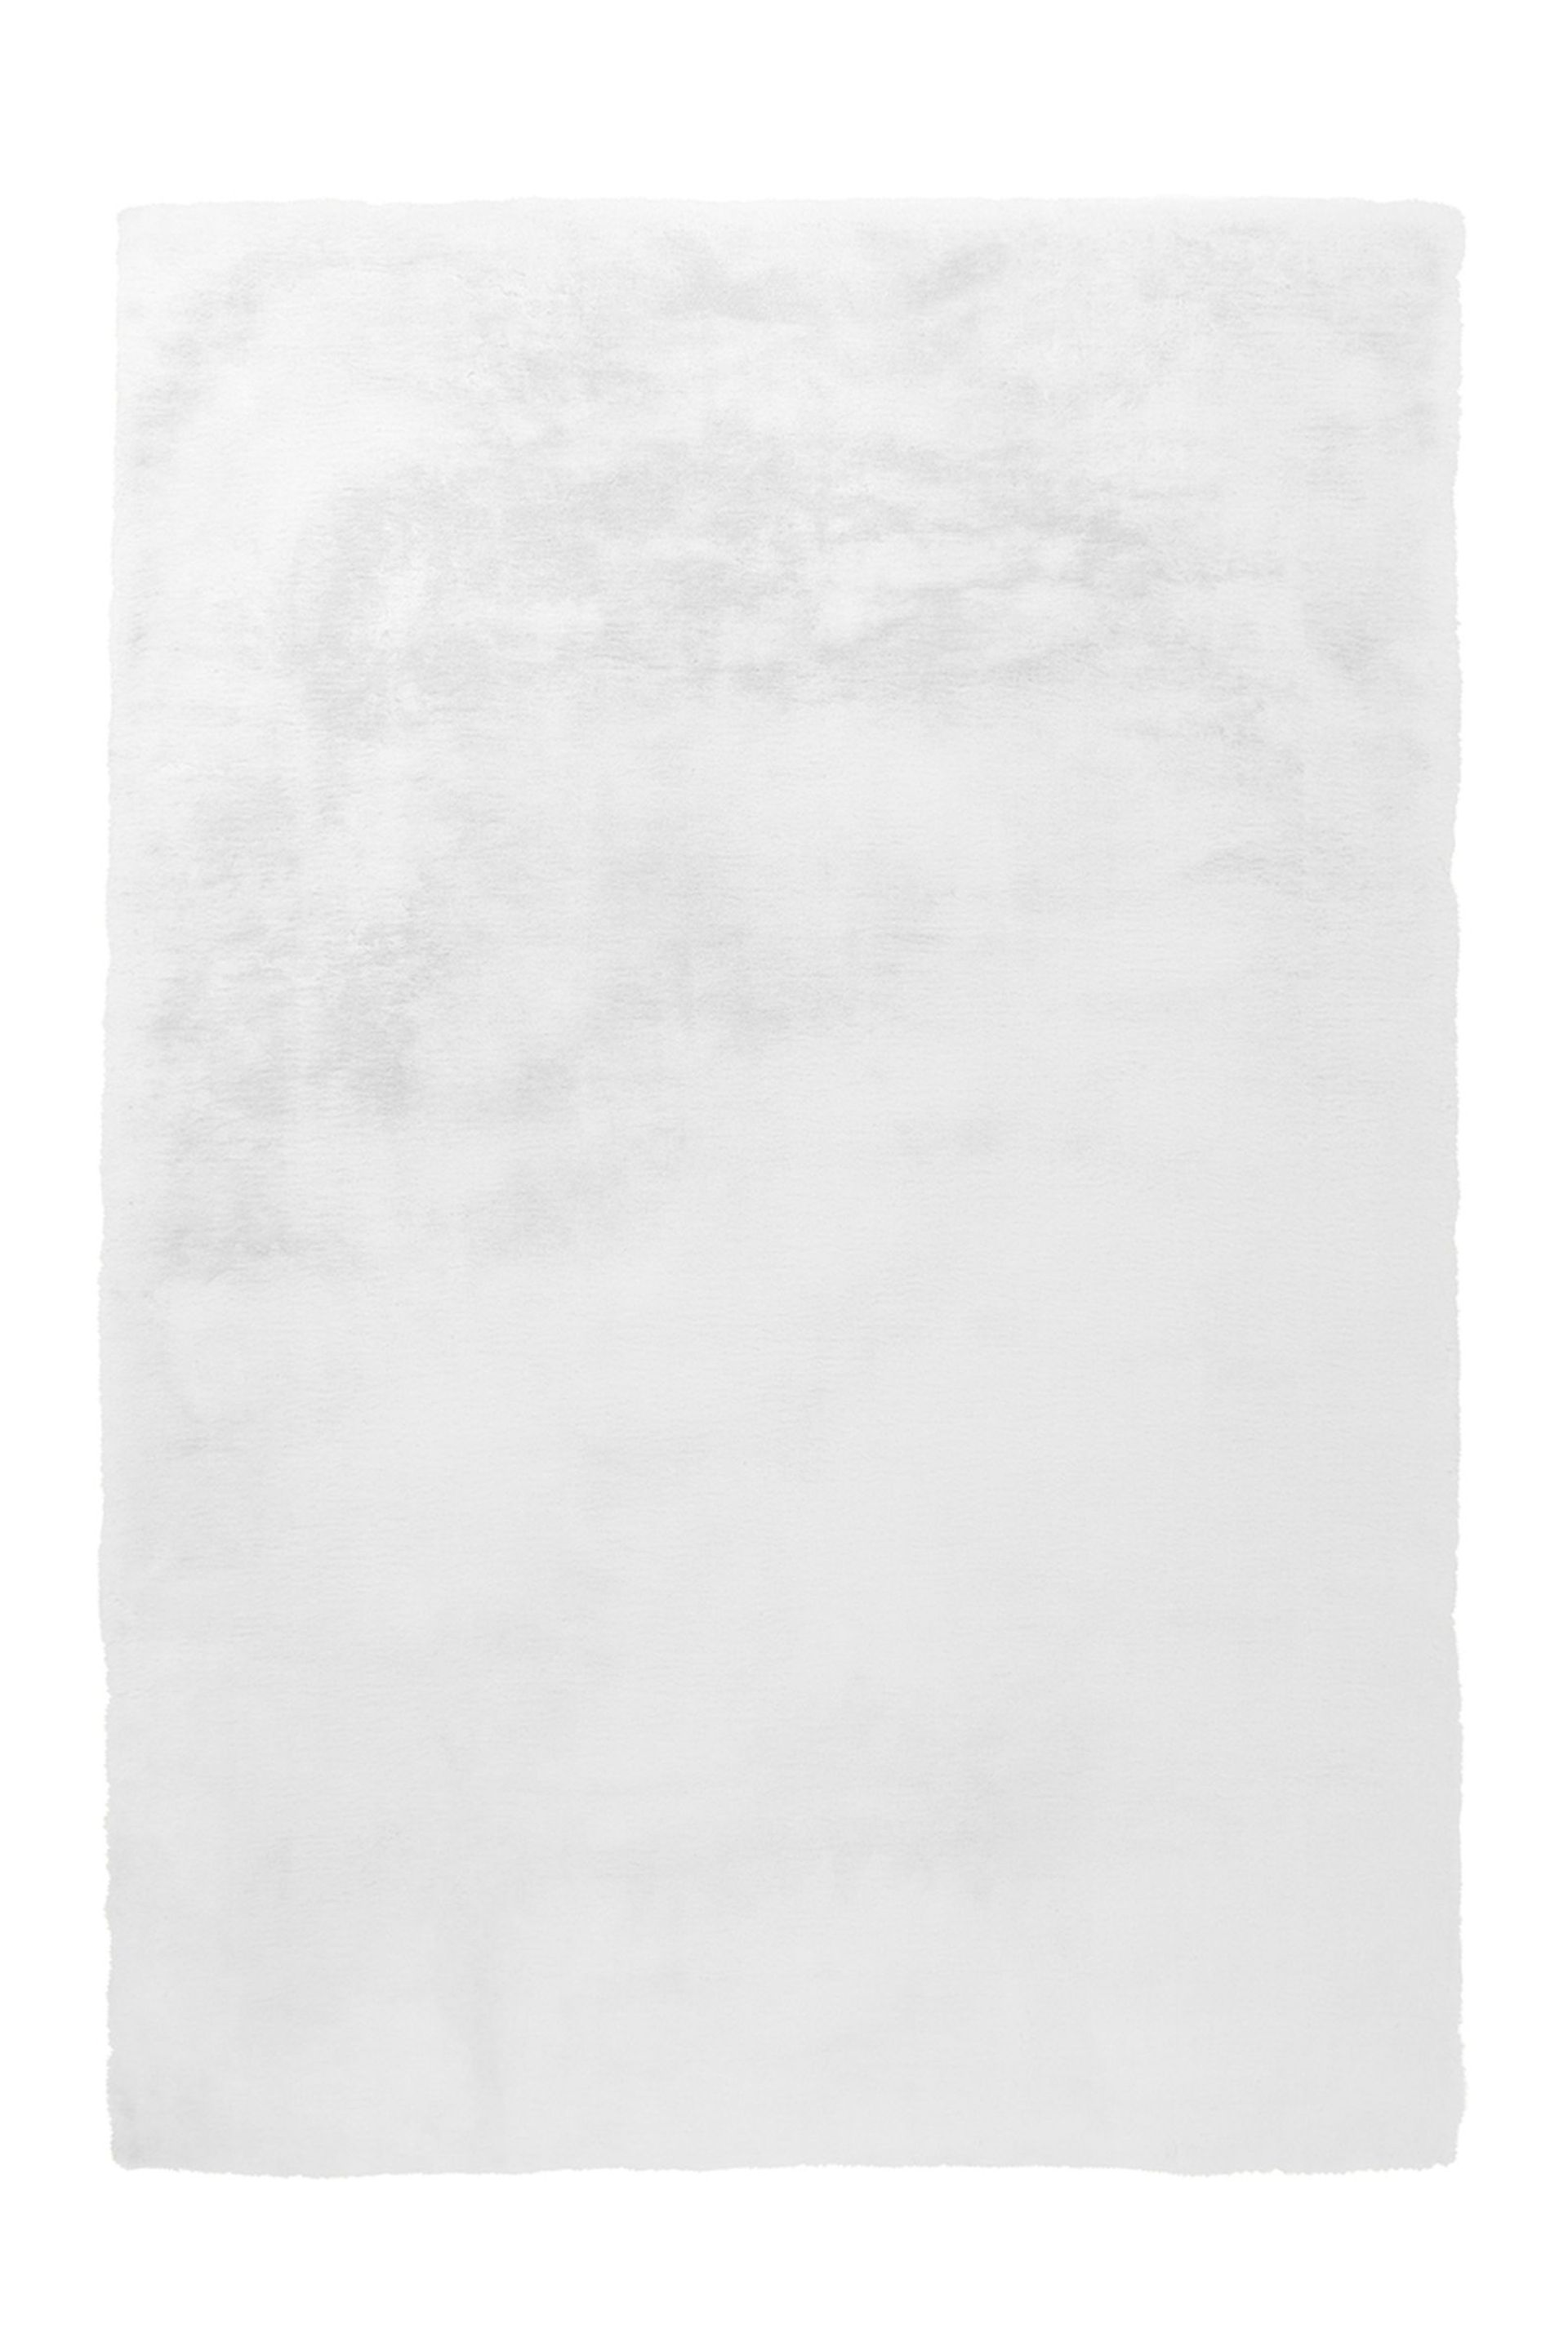 Teppich Rabbit 100 Weiß  120 cm x 170 cm